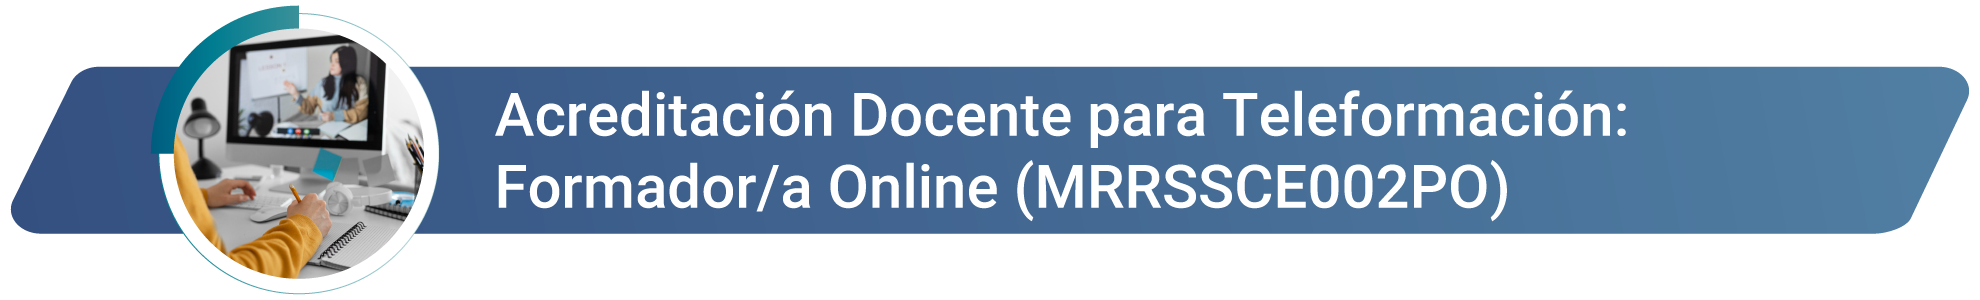 MRRSSCE002PO - Acreditación Docente para Teleformación Formadora Online